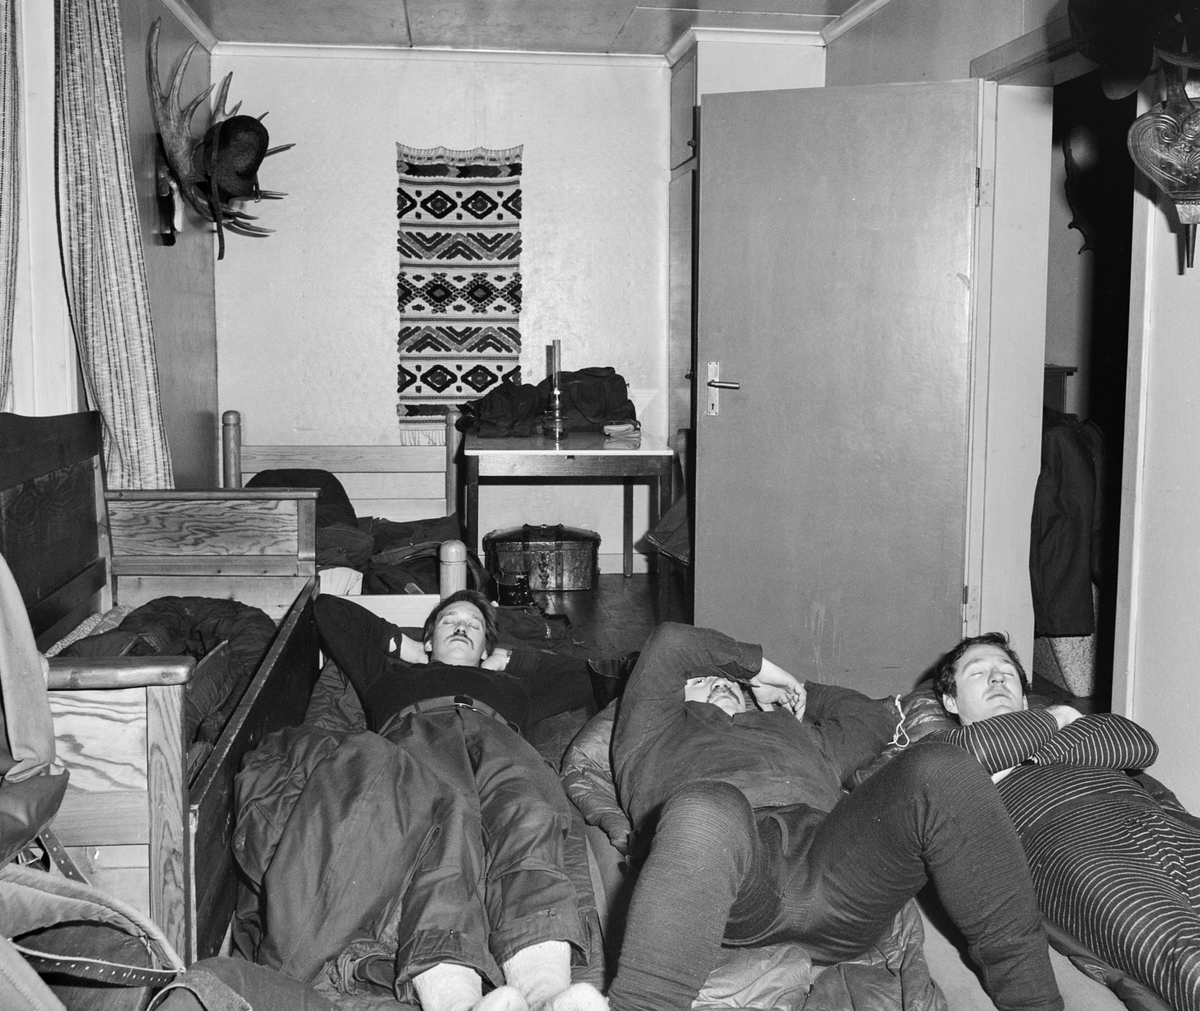 Övernattning i Lillhärjåbygget. 
Vi övernattade under mycket enkla förhållanden, men sömnen var god efter en dag på fjället. Älghorn hängde i alla rum (tror jag), de flesta med en guldplakett på.